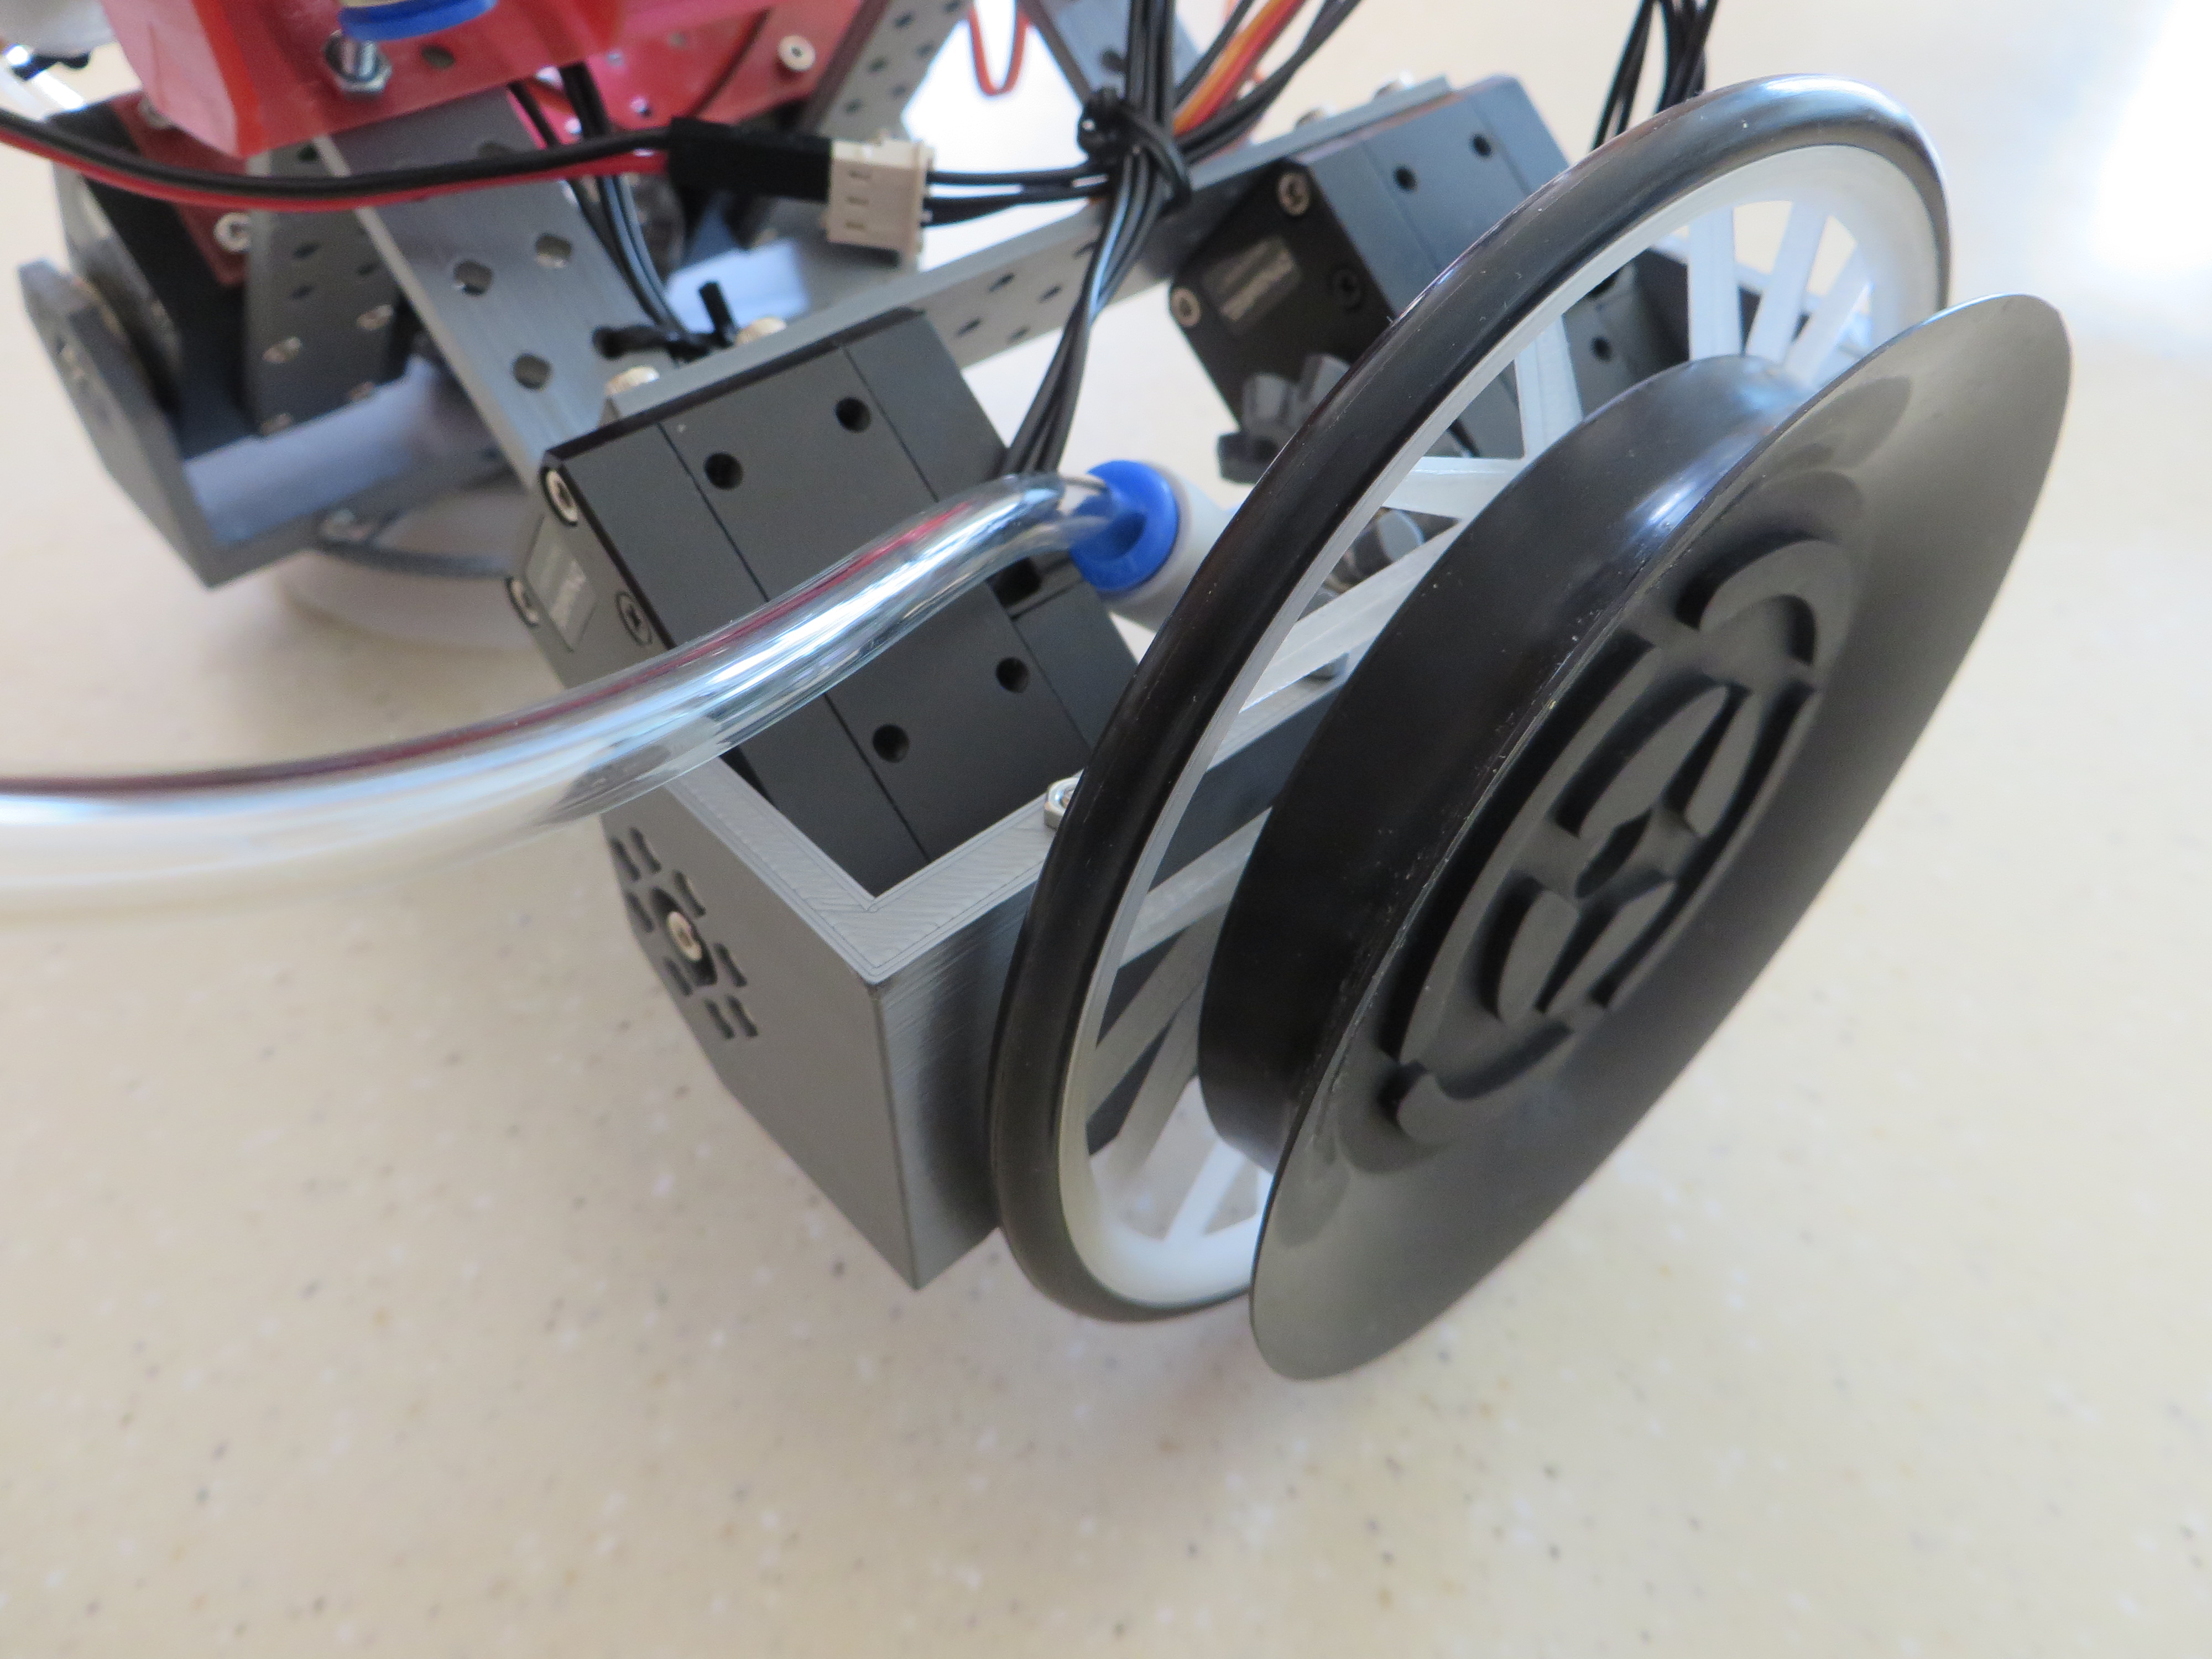 Robot leg in wheel mode